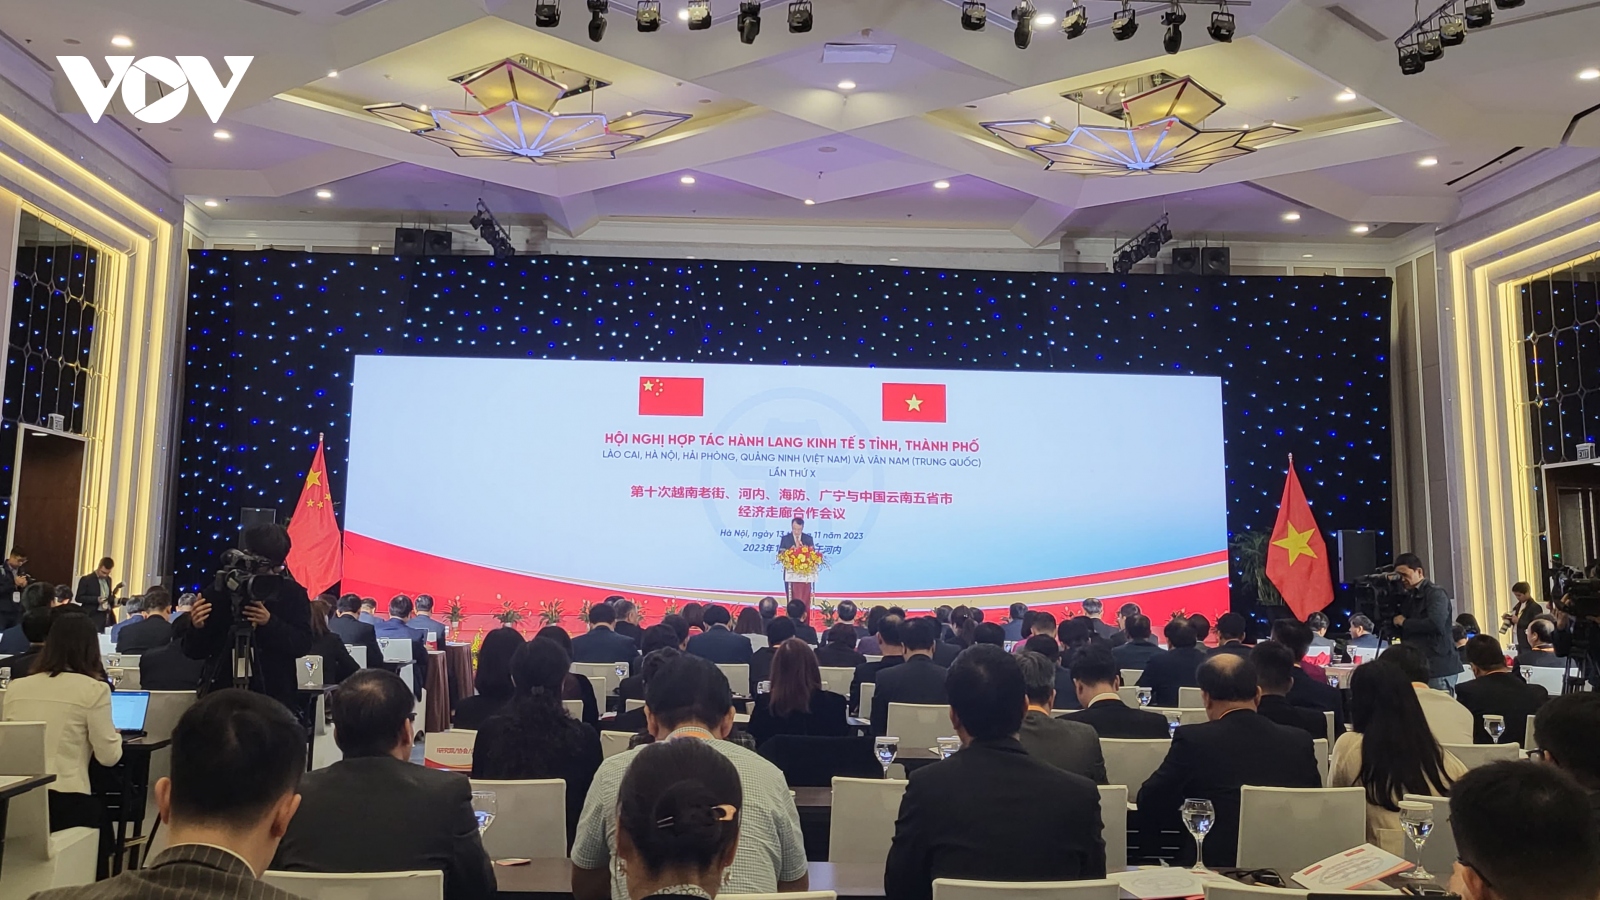 Khai mạc Hội nghị hợp tác hành lang kinh tế Việt - Trung lần thứ X